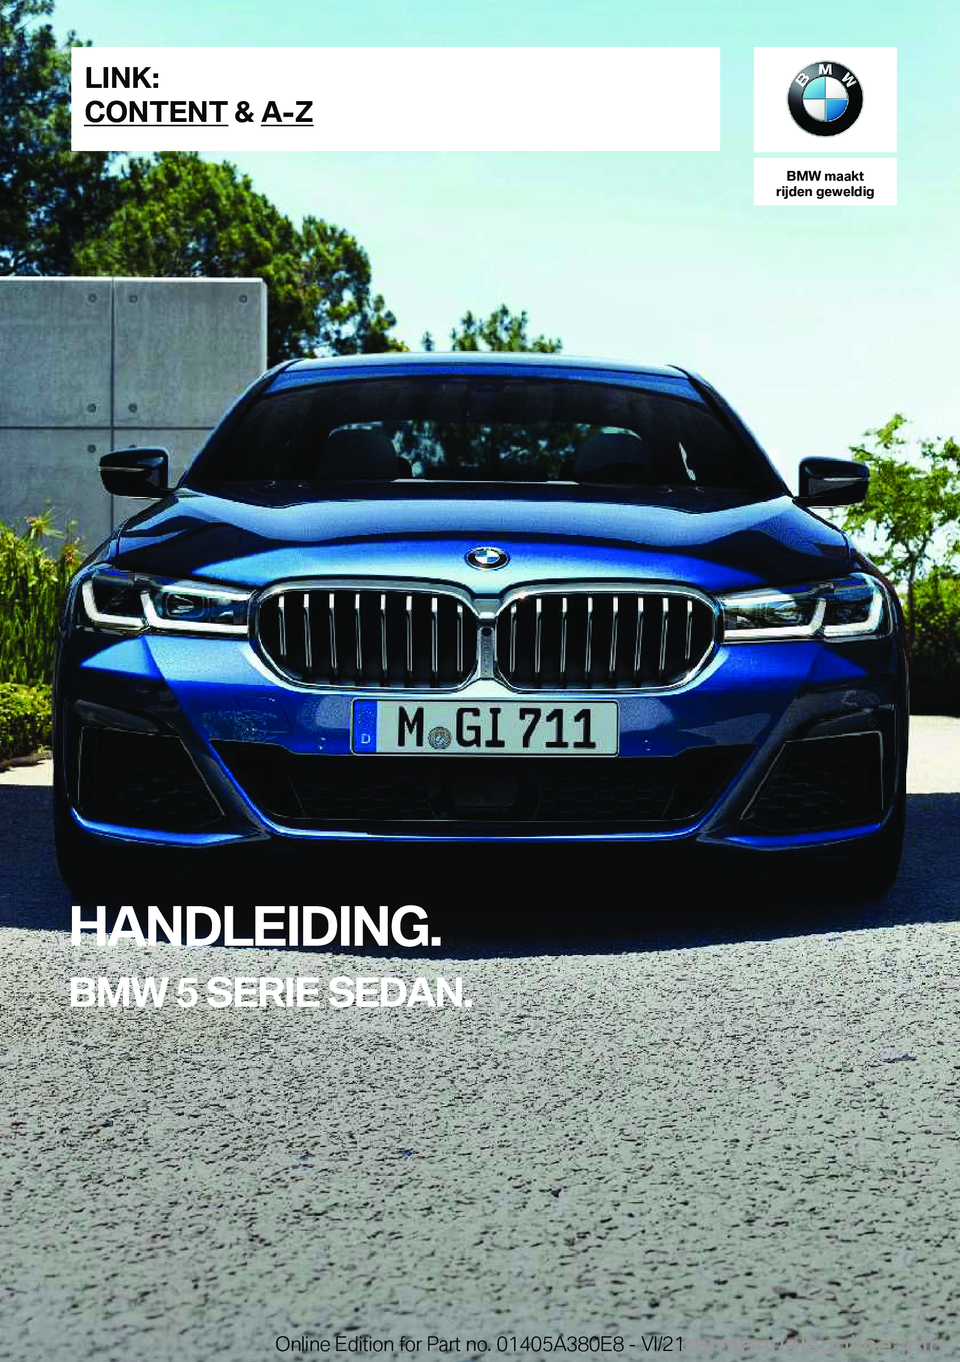 BMW 5 SERIES 2022  Instructieboekjes (in Dutch) �B�M�W��m�a�a�k�t
�r�i�j�d�e�n��g�e�w�e�l�d�i�g
�H�A�N�D�L�E�I�D�I�N�G�.
�B�M�W��5��S�E�R�I�E��S�E�D�A�N�.�L�I�N�K�:
�C�O�N�T�E�N�T��&��A�-�Z�O�n�l�i�n�e��E�d�i�t�i�o�n��f�o�r��P�a�r�t��n�o